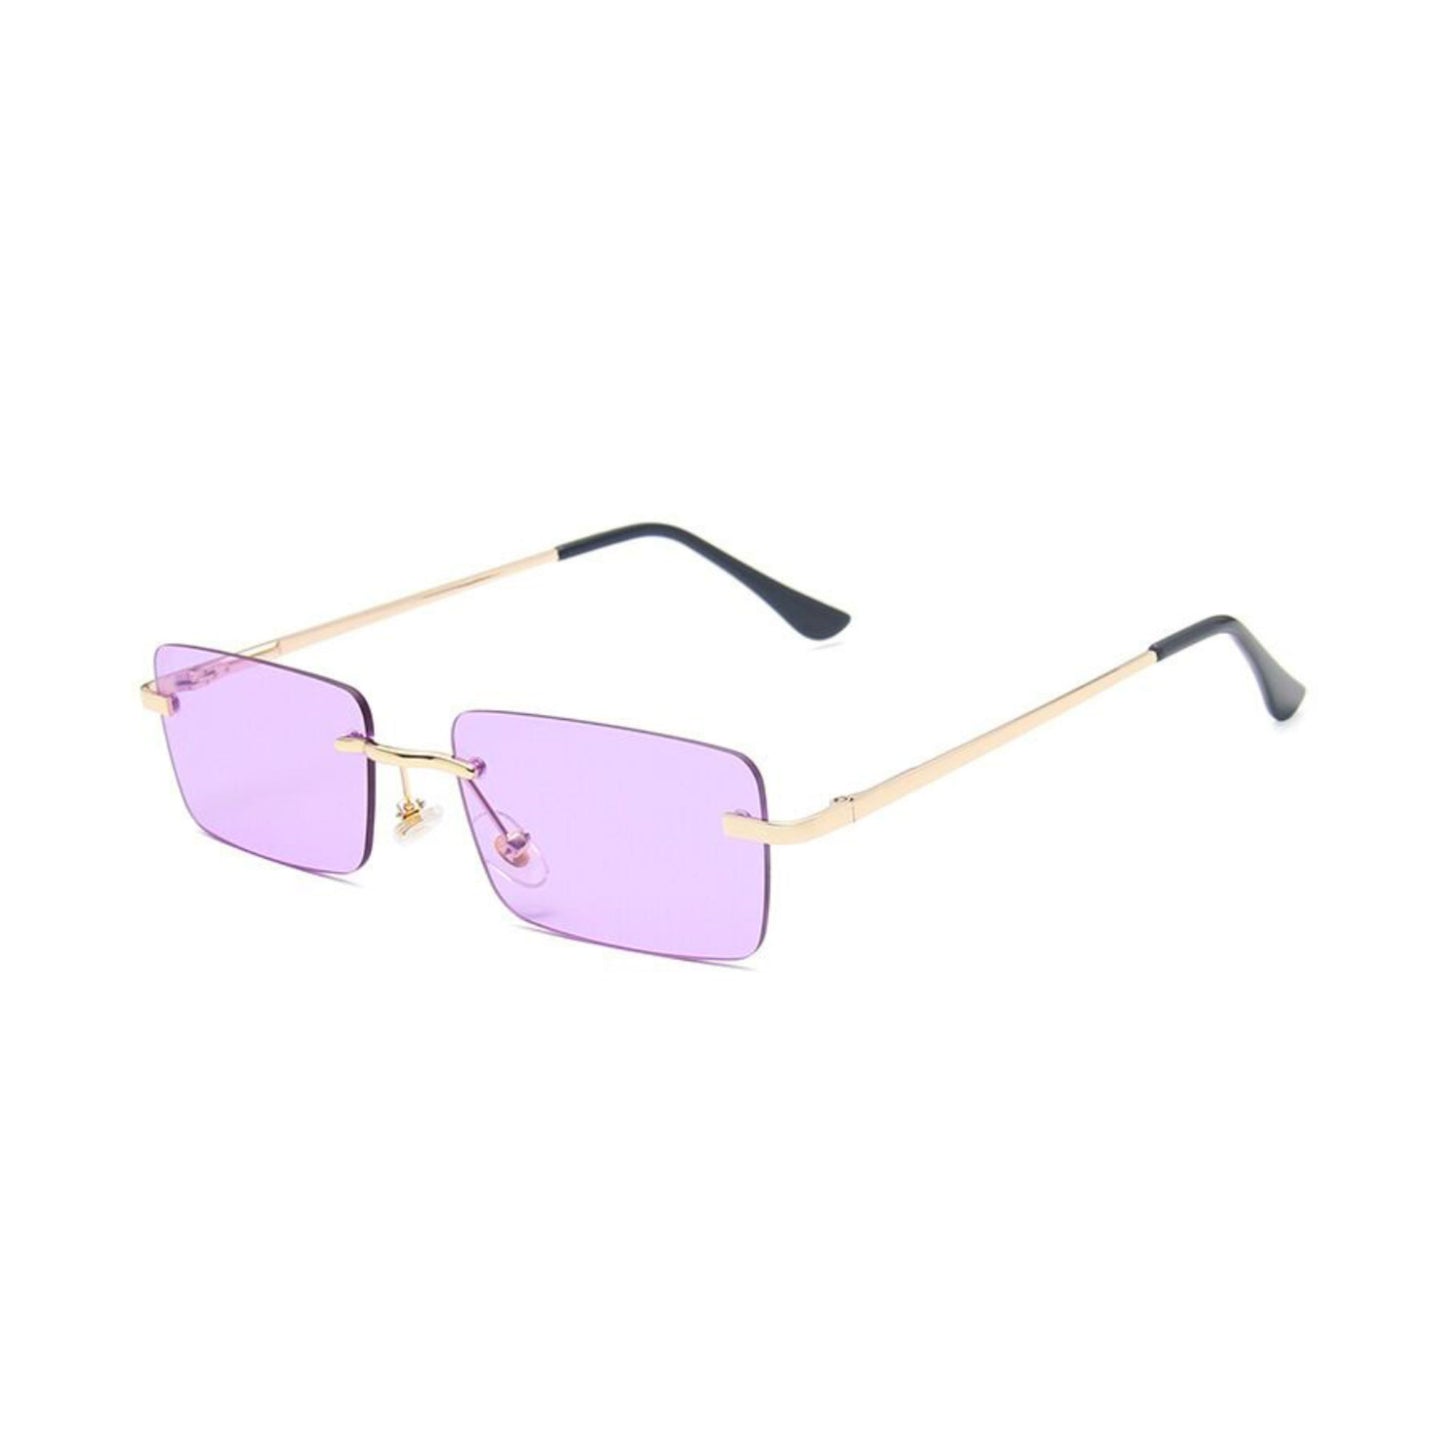 Ορθογώνια Γυαλιά Ηλίου Tez της Exposure Sunglasses με προστασία UV400 σε χρυσό χρώμα σκελετού και μωβ φακό. Πλάγια προβολή.